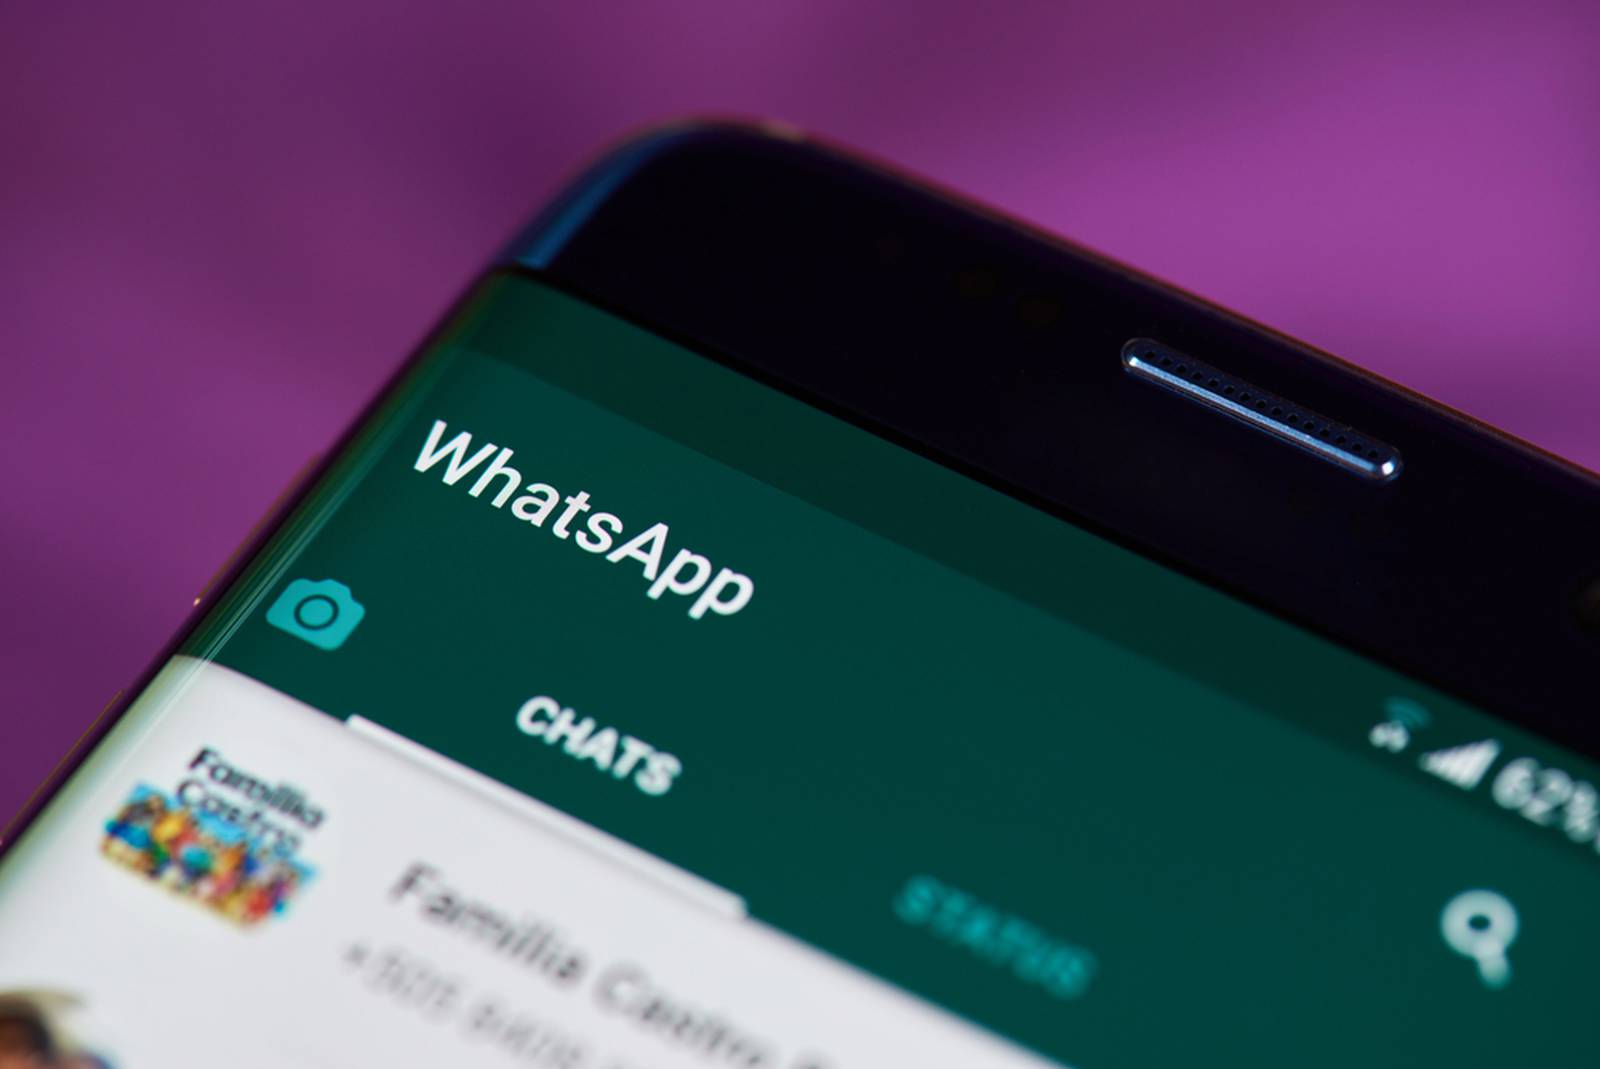 Solo El Administrador Puede Enviar Mensajes En Whatsapp